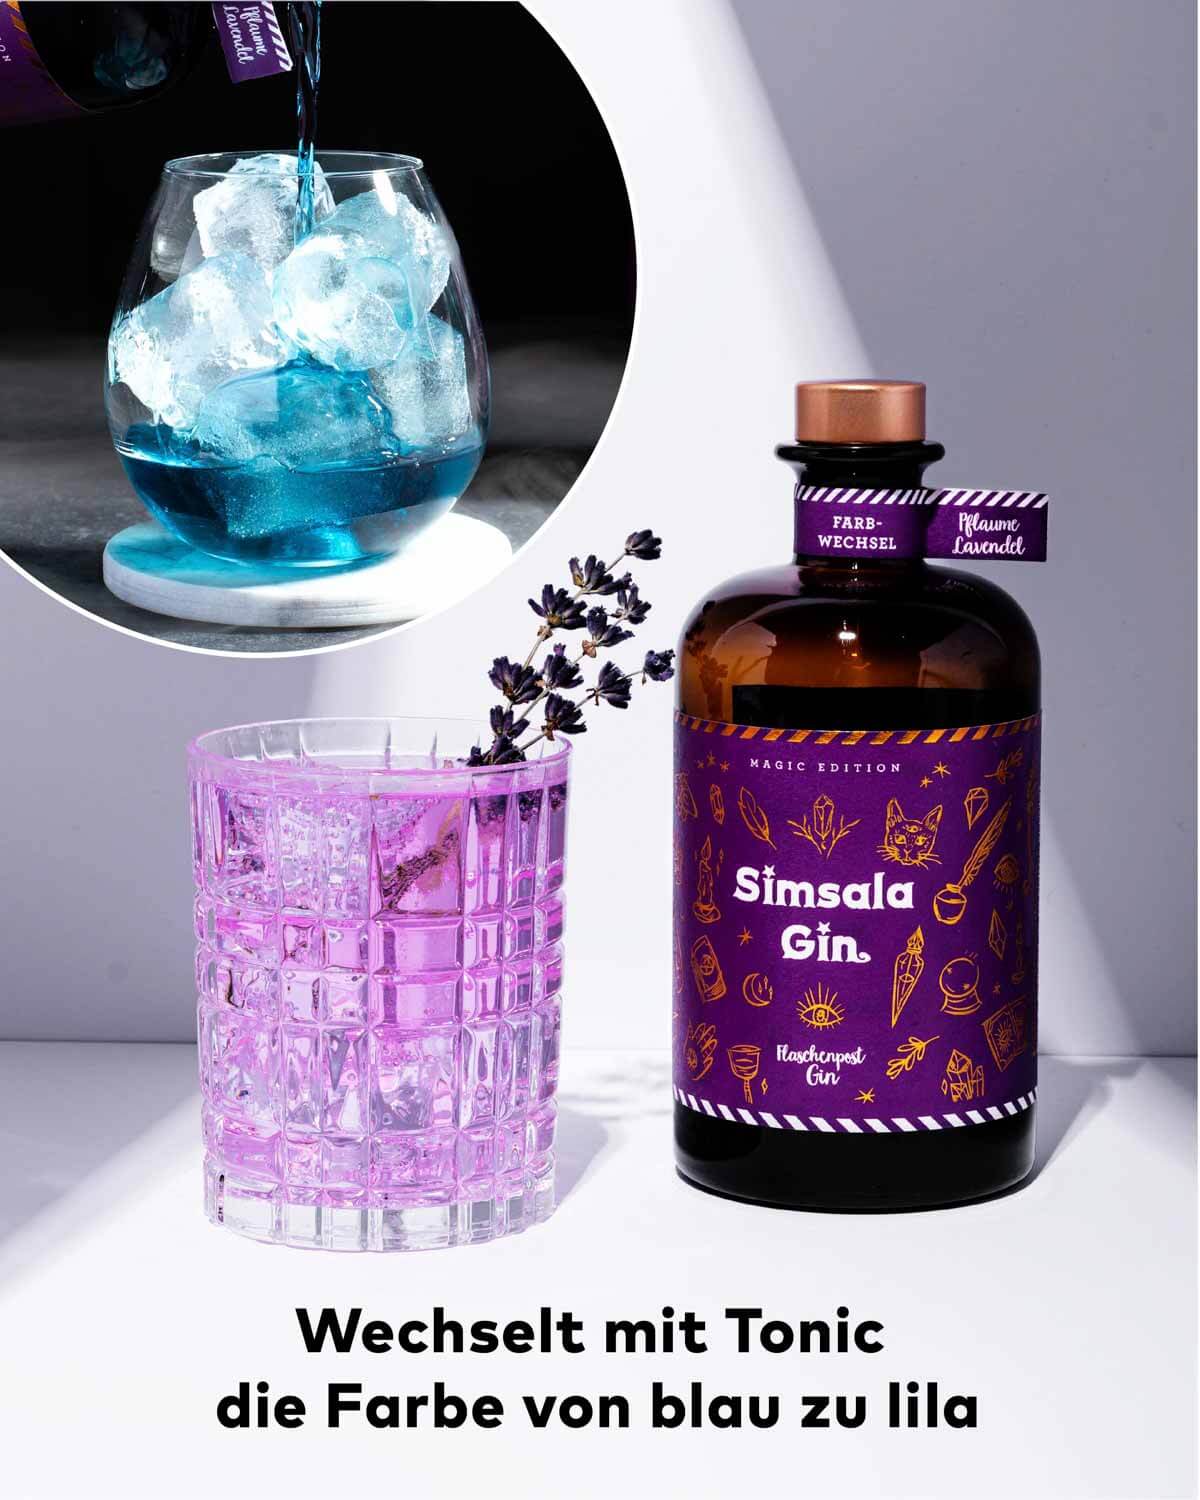 Unser zauberhafter Simsala Gin zieht alle Blicke auf sich, denn mit Tonic verändert er seine Farbe von blau zu violett. Ideal für einen außergewöhnlichen Gin Tonic, der jeden fasziniert und verzaubert.